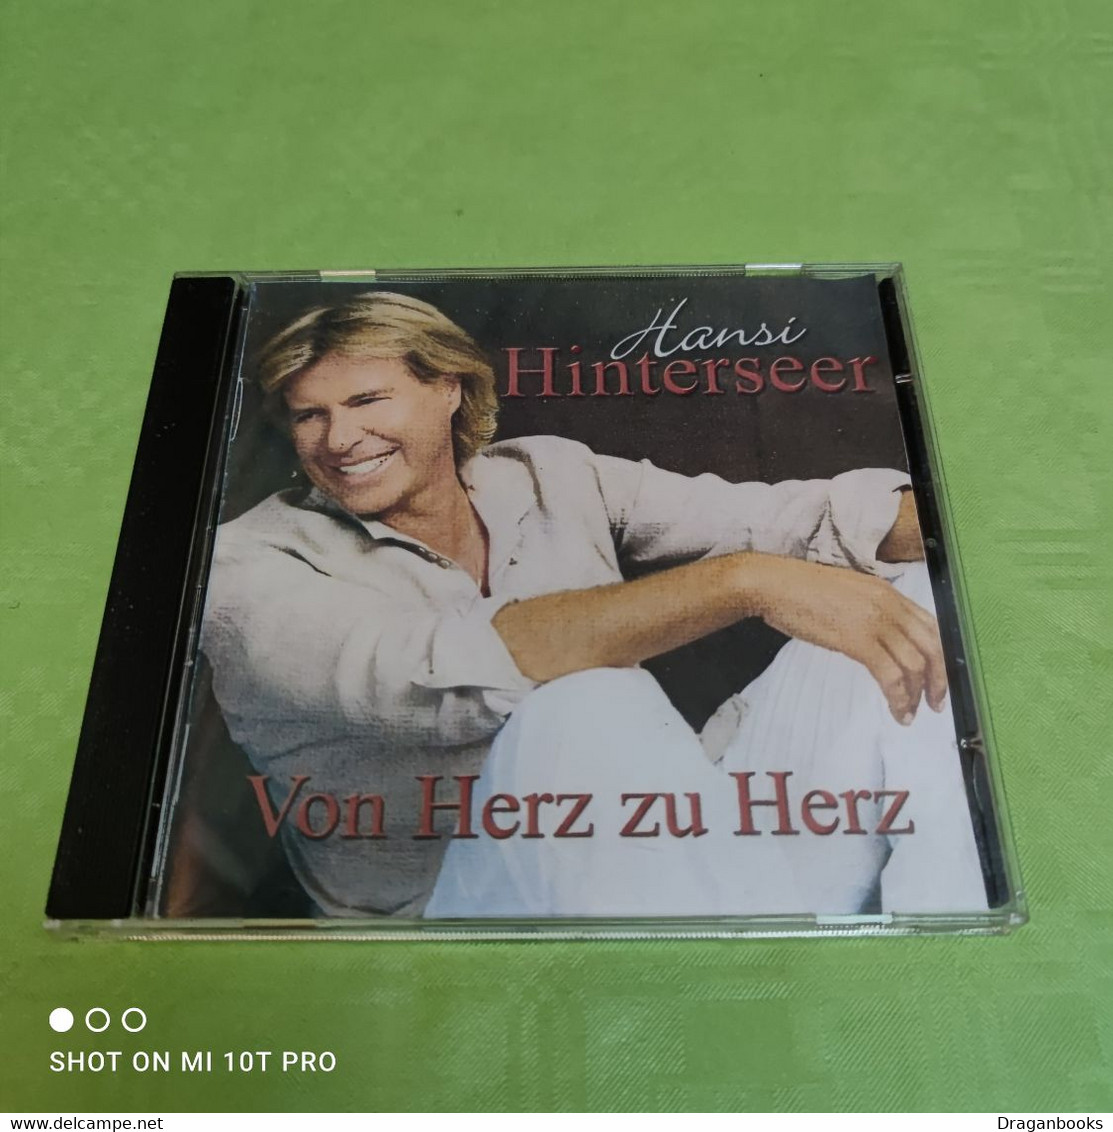 Hansi Hinterseer - Von Herz zu Herz